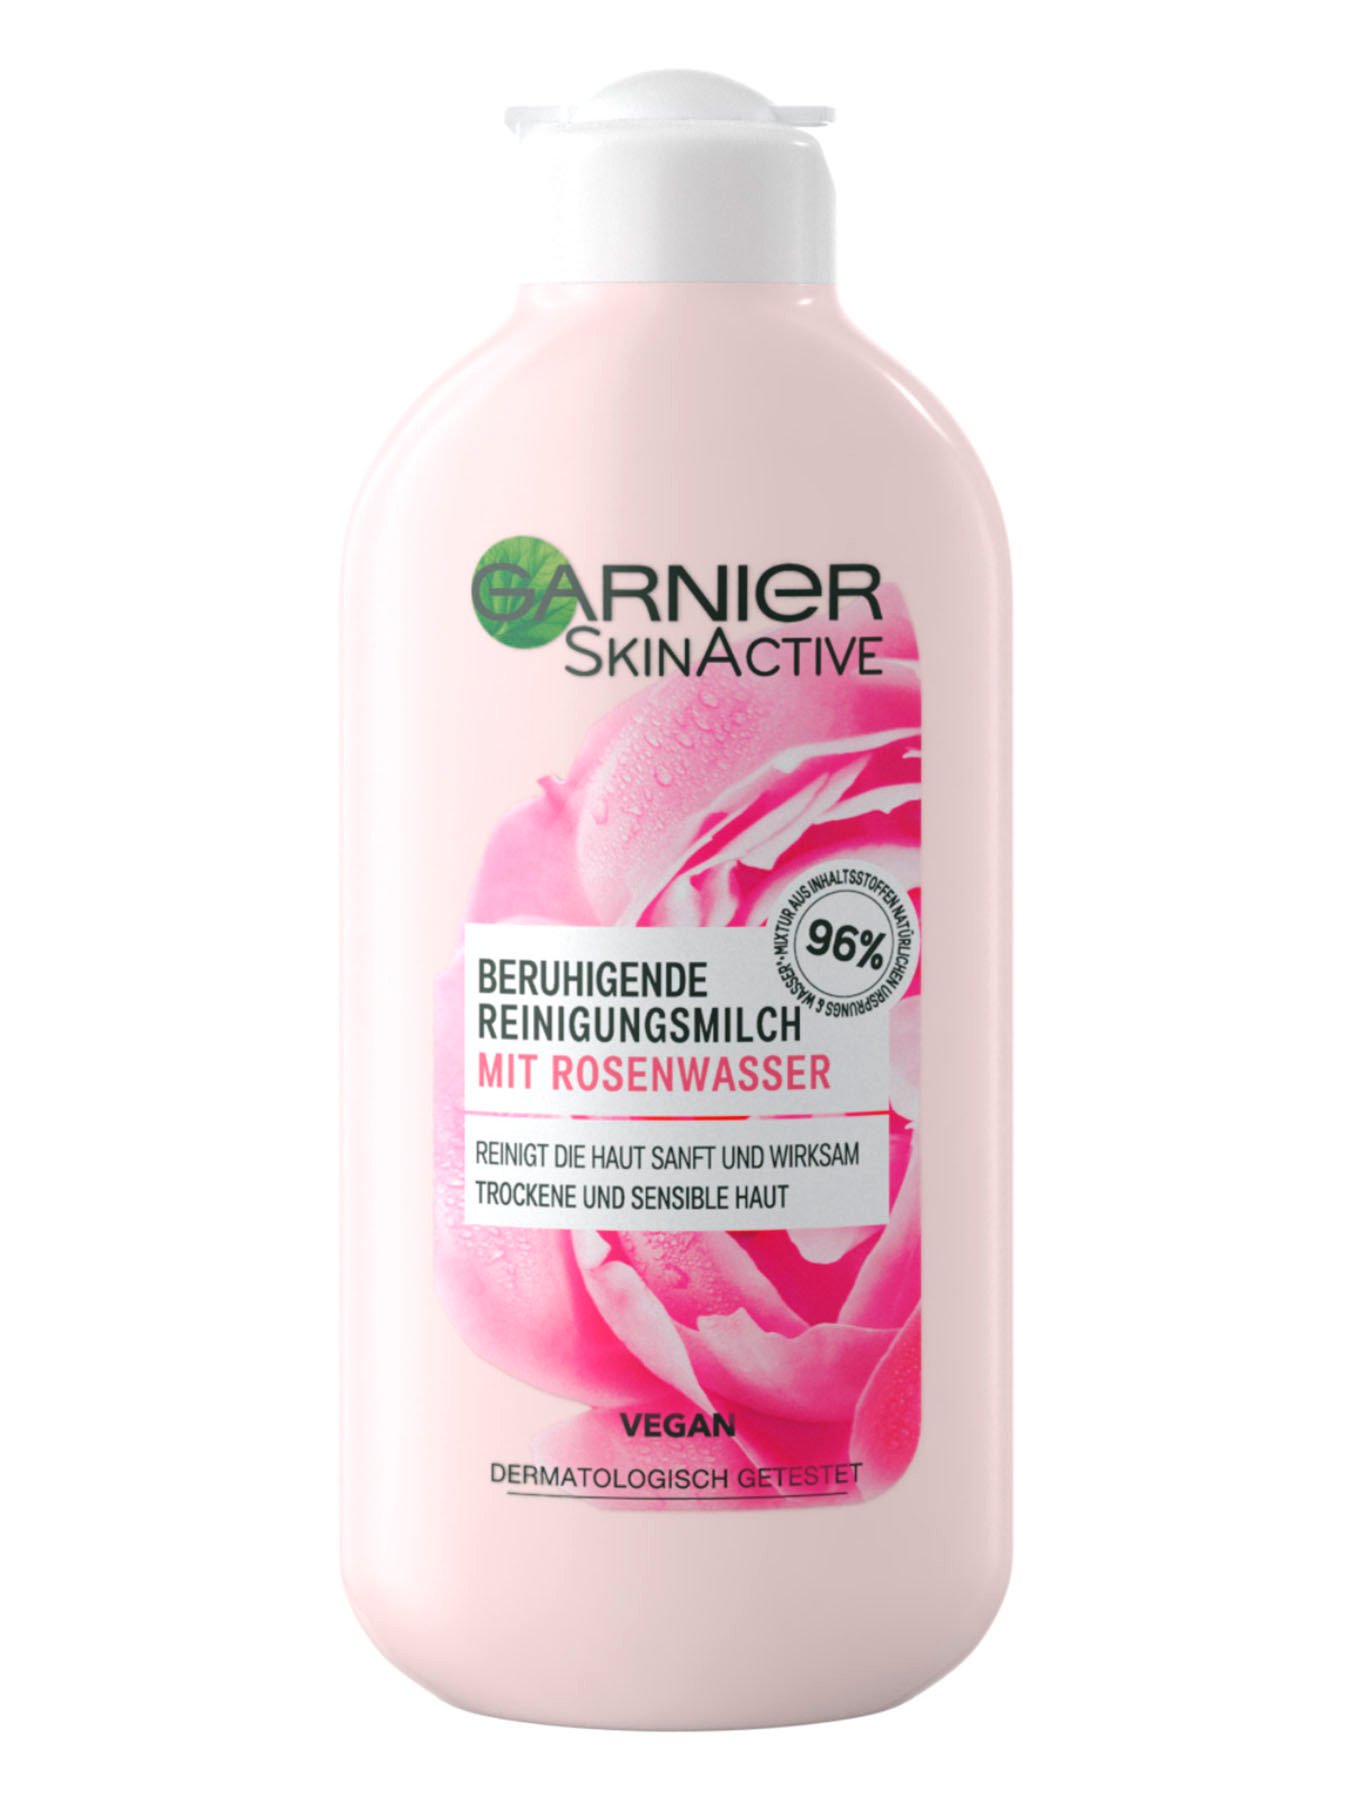 Beruhigende Reinigungsmilch mit Rosenwasser | Garnier